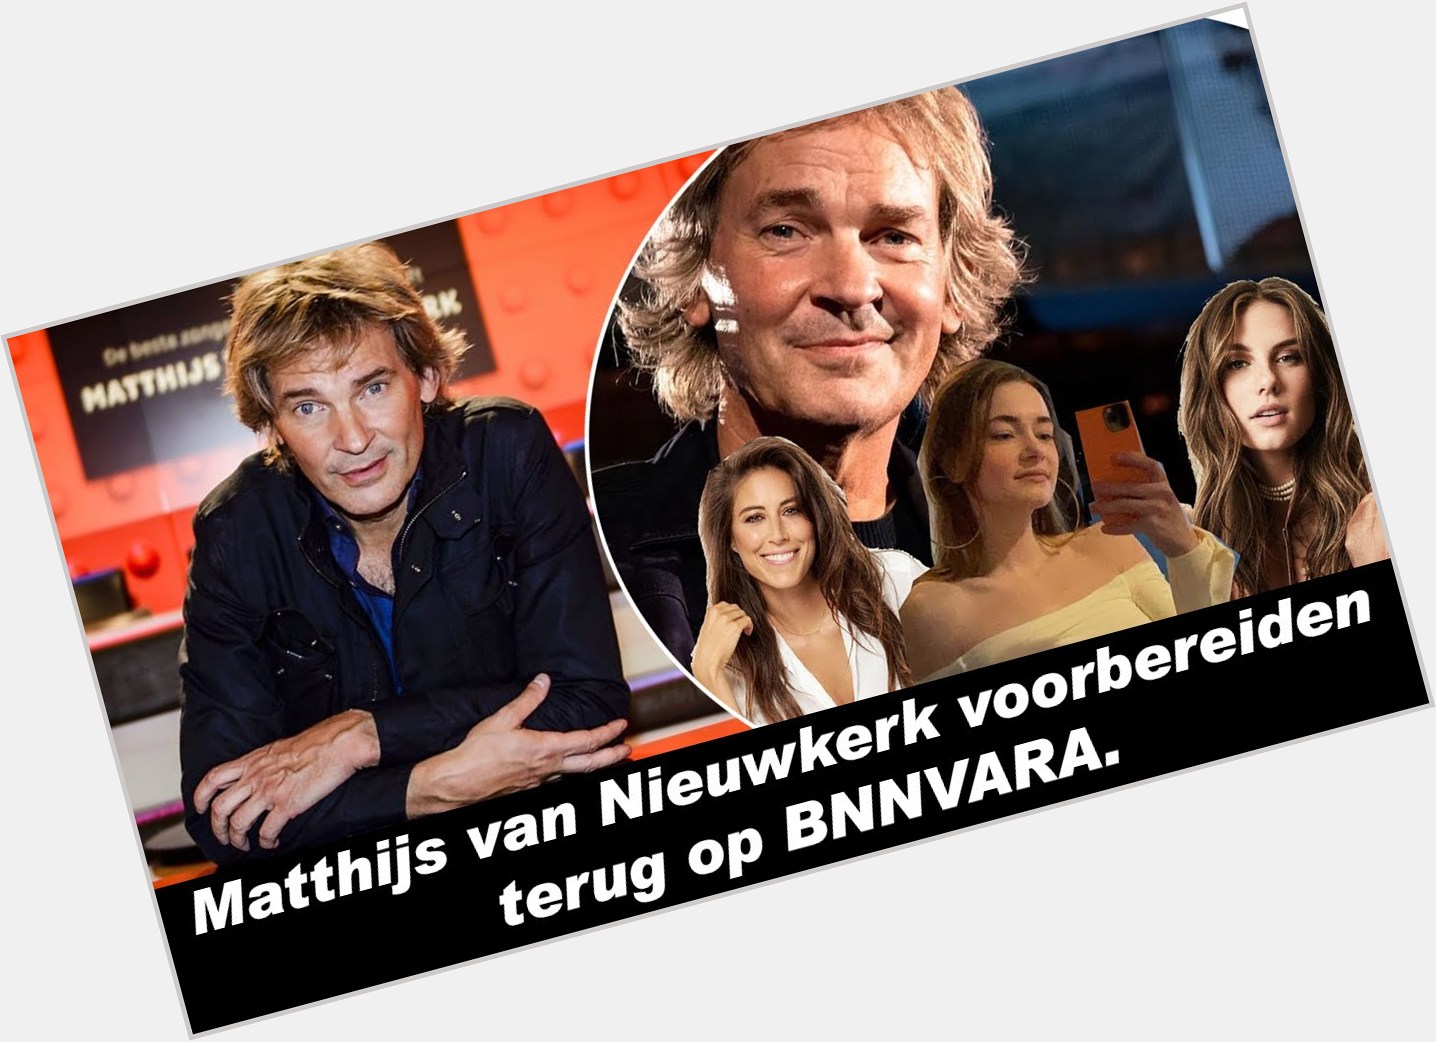 <a href="/hot-men/matthijs-van-nieuwkerk/where-dating-news-photos">Matthijs Van Nieuwkerk</a>  